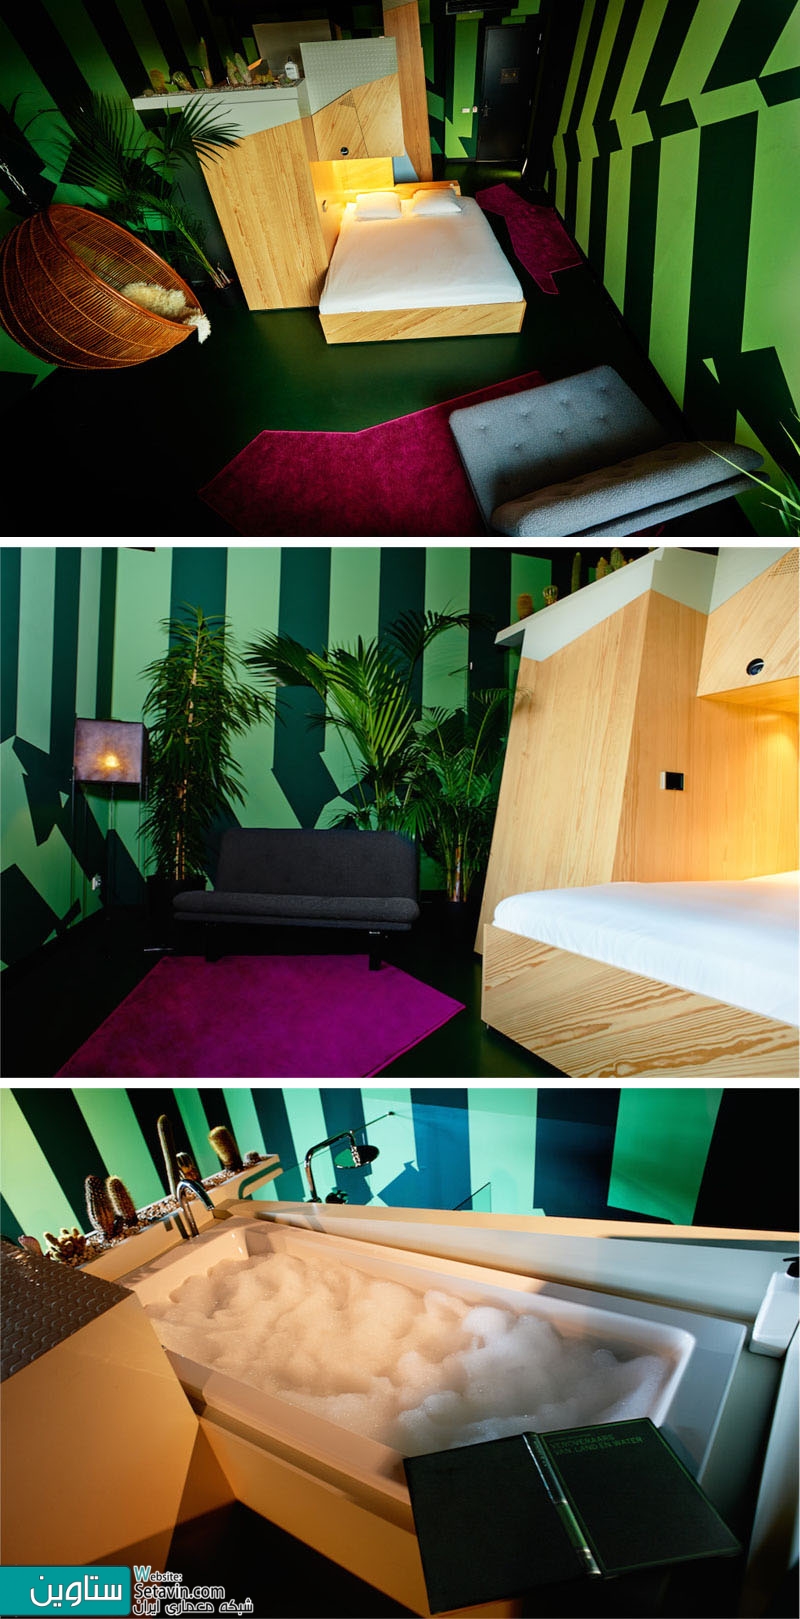 هتل Volkshotel , طراحی , 9 اتاق , 9 طراح , ایده های متفاوت , آمستردام , Designer , Hotel , Amsterdam , هتل , طراحی هتل , طراحی اتاق هتل